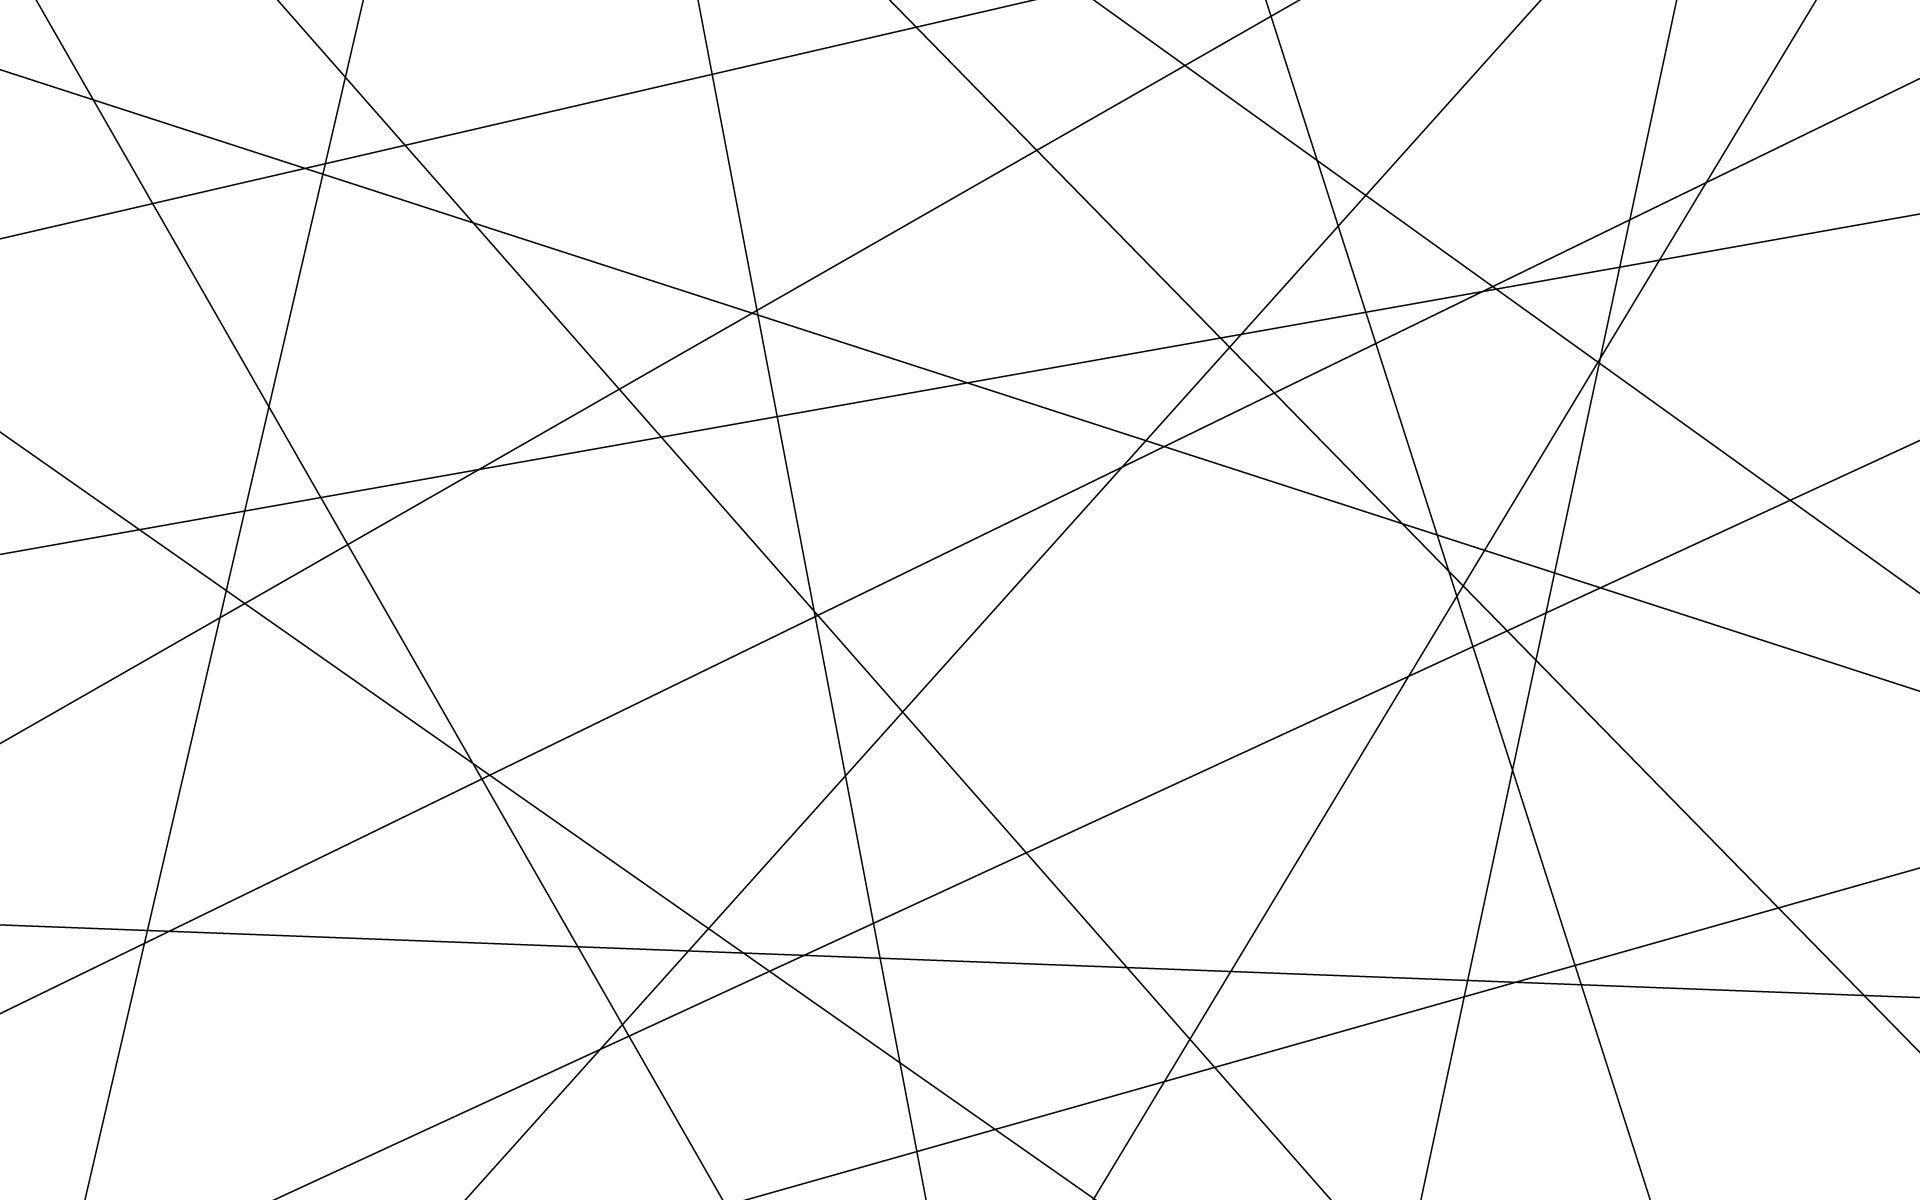 Download Gambar Wallpaper Black and White Geometric terbaru 2020